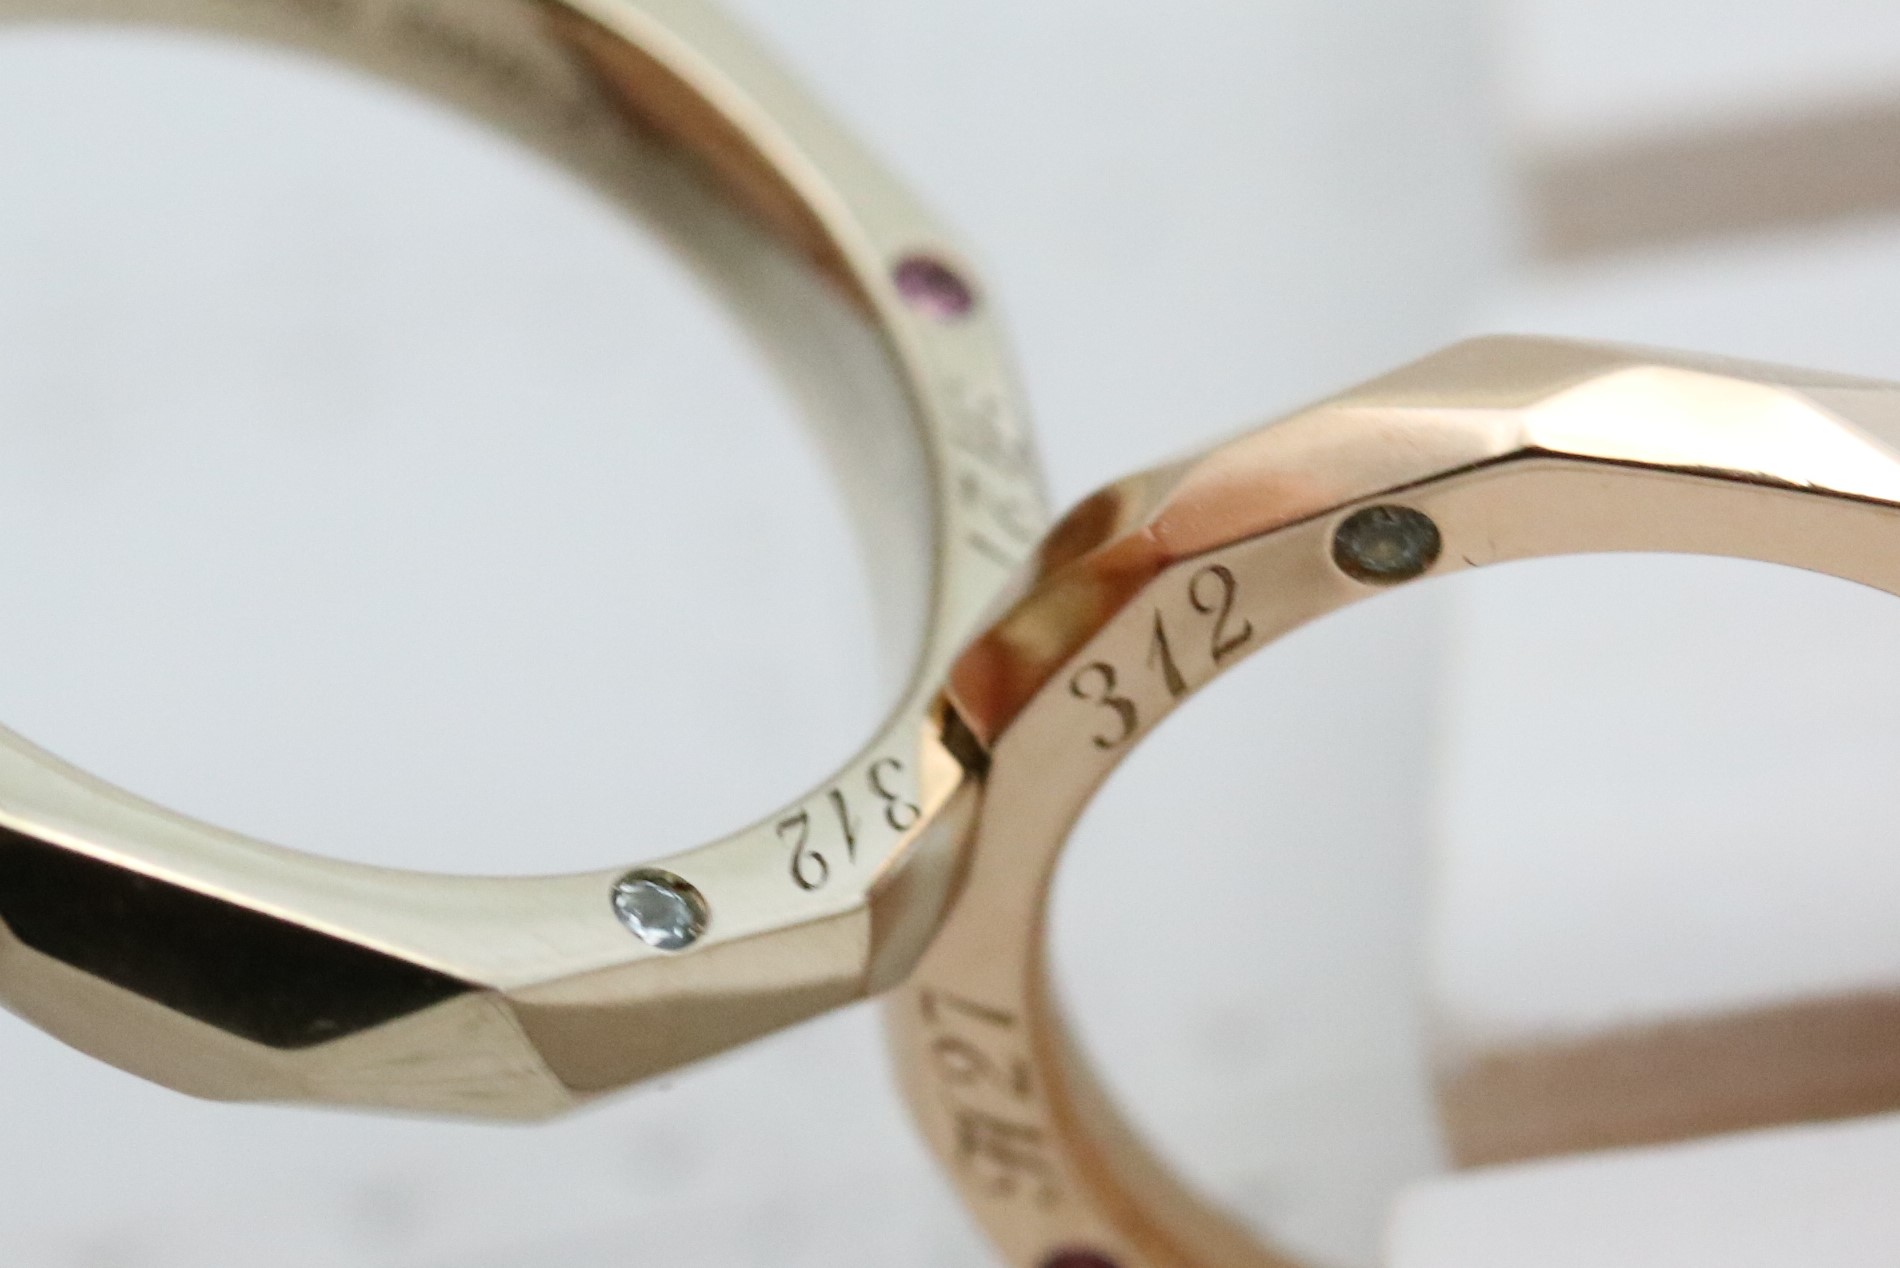 結婚指輪 婚約指輪を手作りした徳島県のお客様 関西 神戸 大阪で結婚指輪 婚約指輪 遺骨リング 遺骨ペンダントを手作り とオーダーメイドが出来るアトリエ